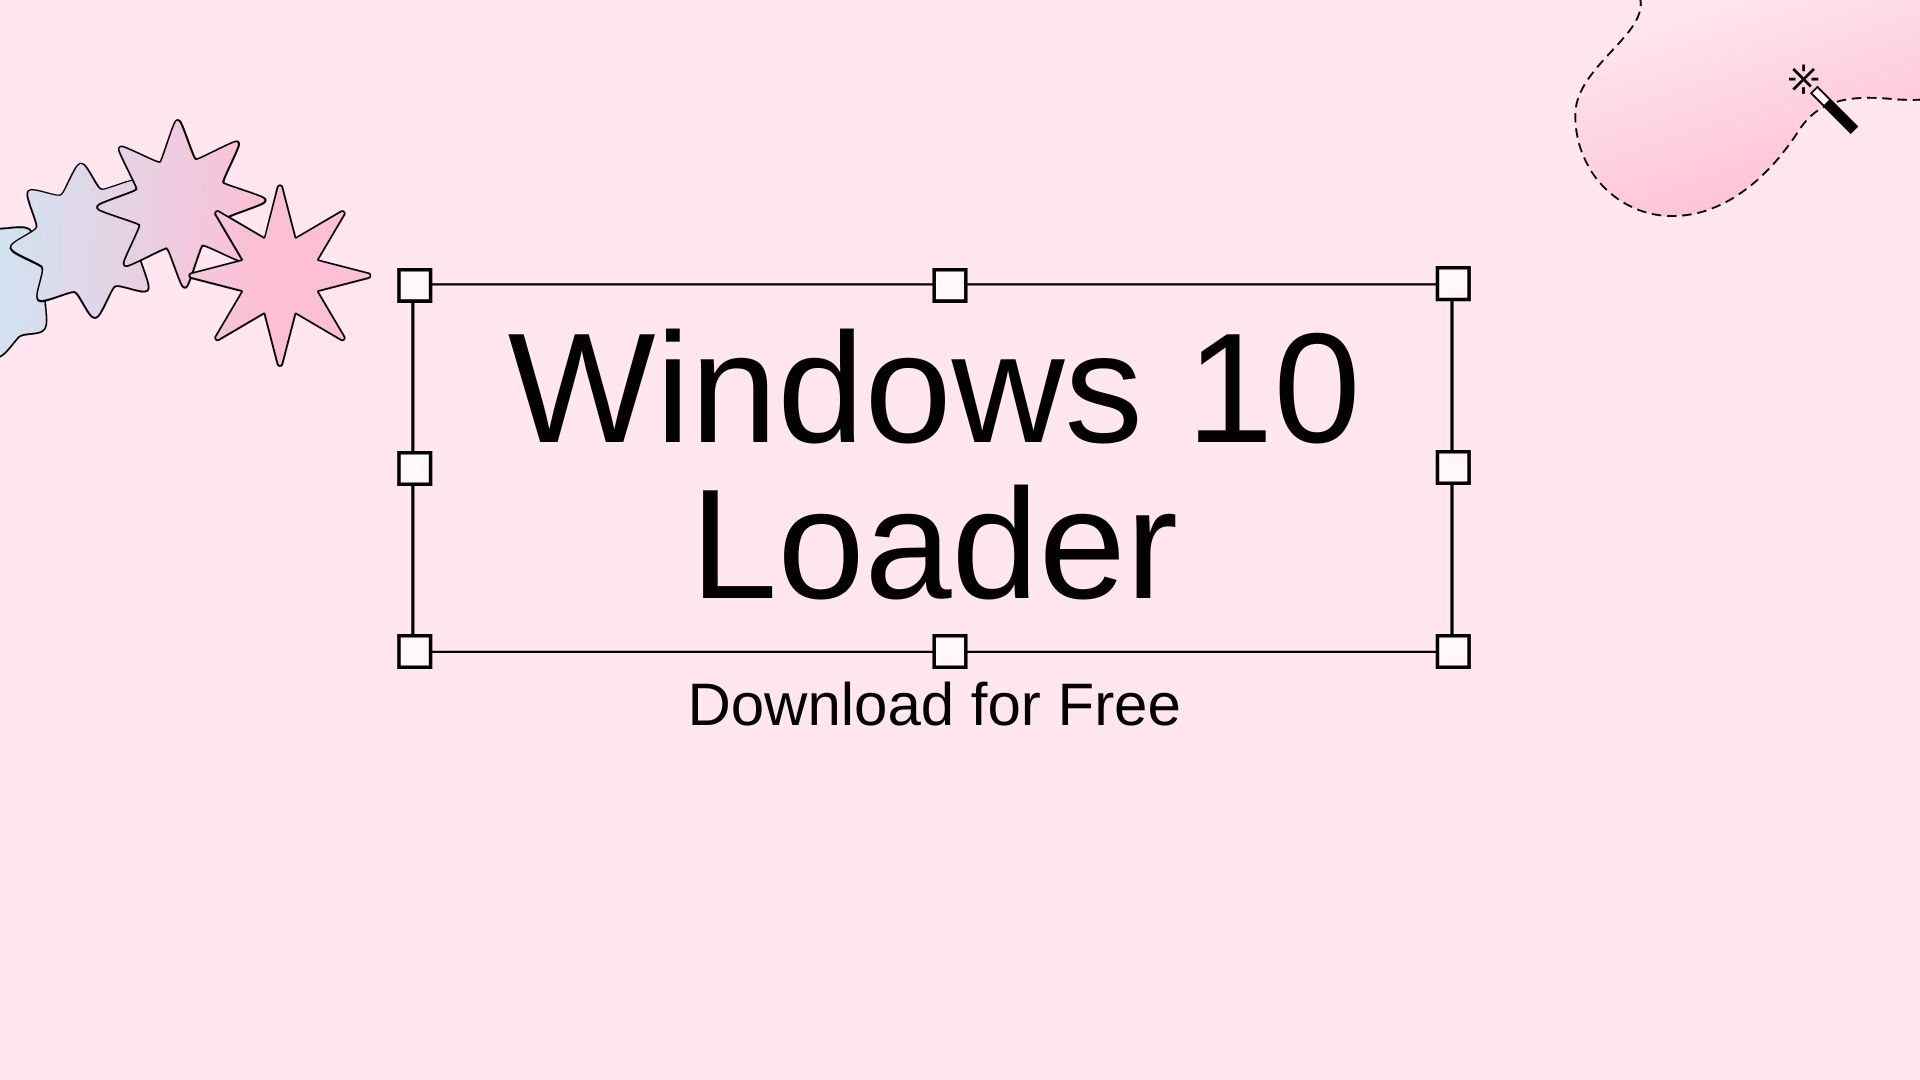 Windows 10 Loader Download for Free